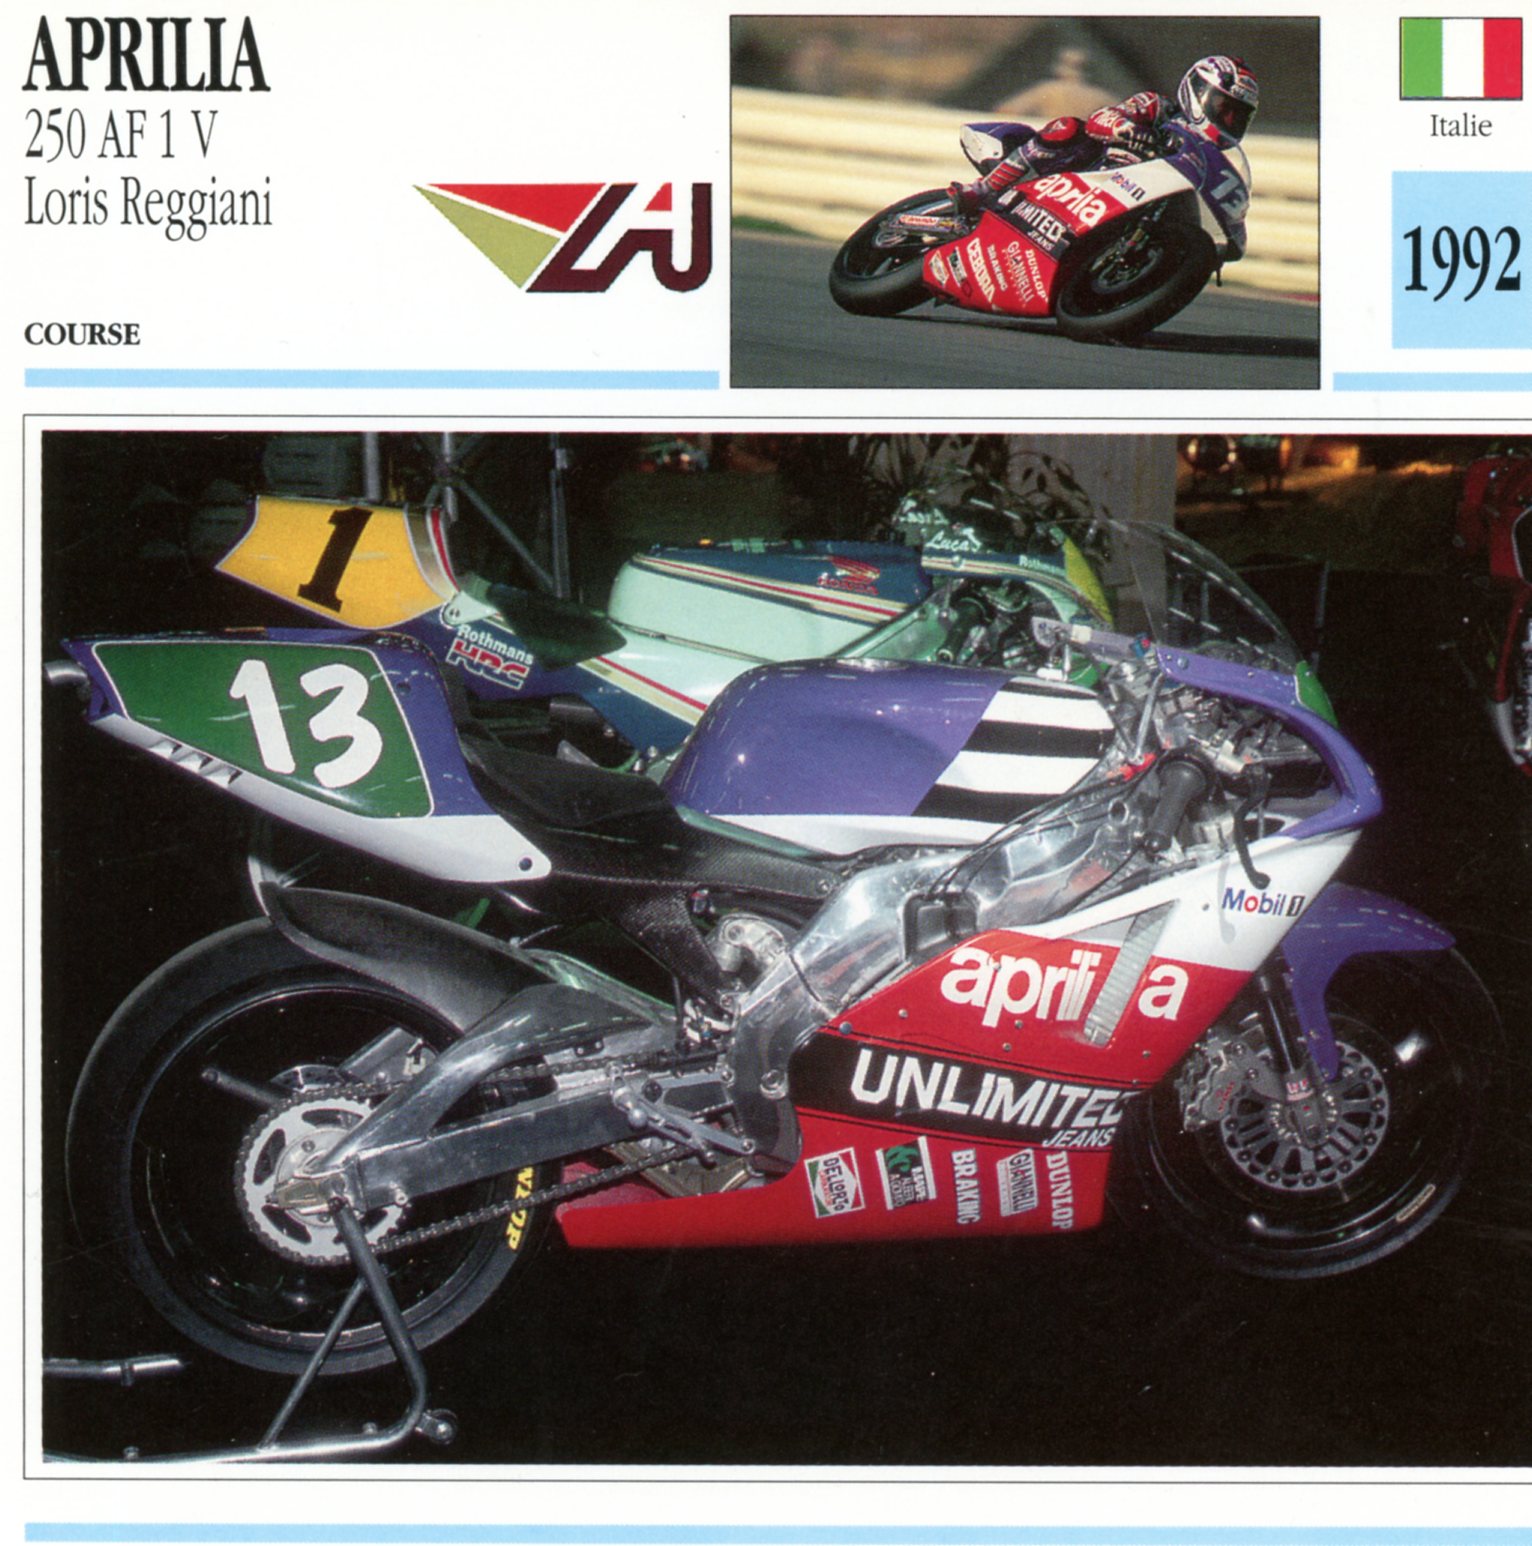 APRILIA 250 AF1 V LORIS REGGIANI 1992 -CARTE-CARD-FICHE-MOTO-LEMASTERBROCKERS